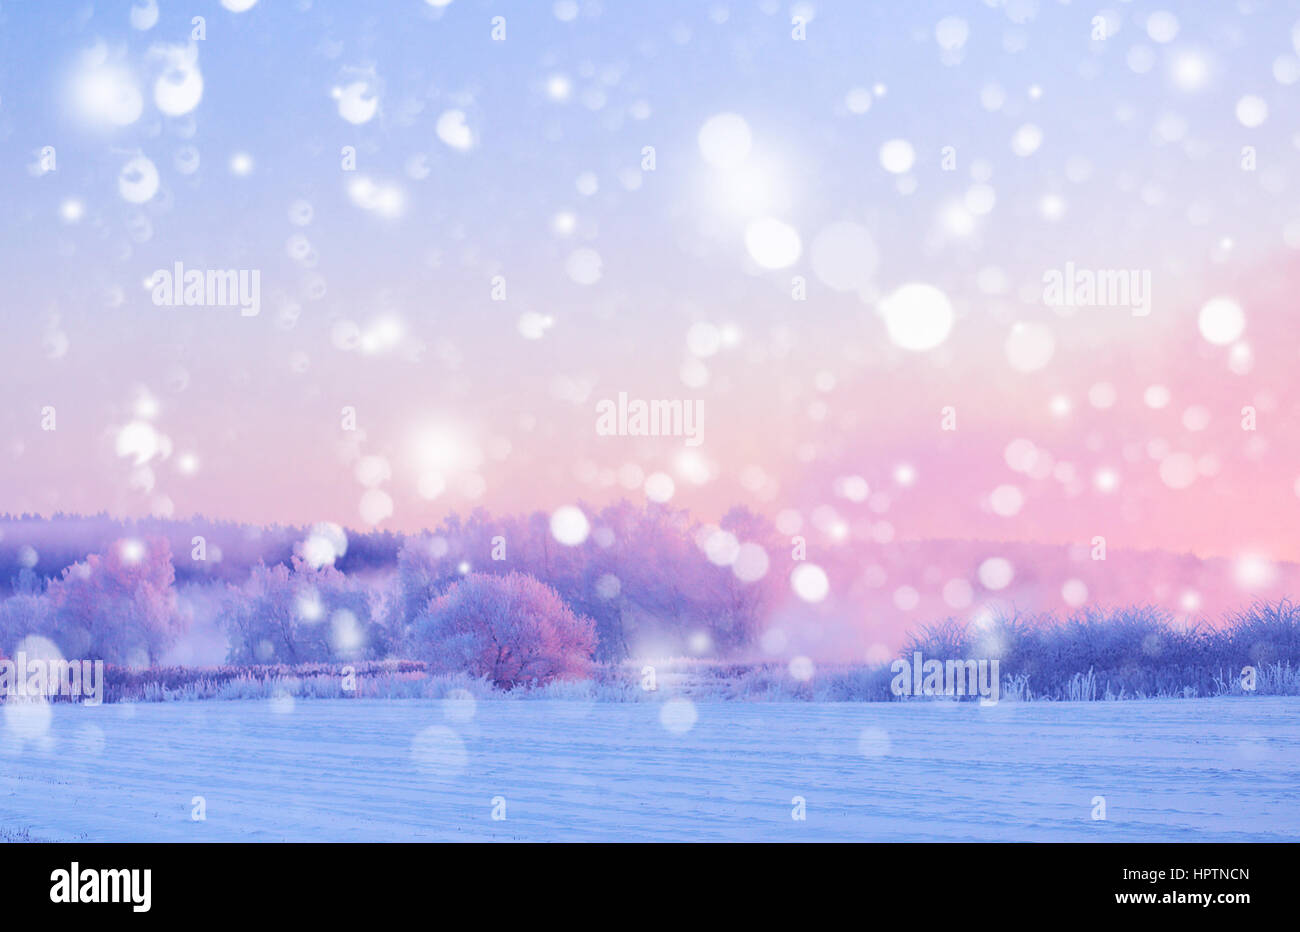 Weihnachten Hintergrund mit weißen Schneeflocken. Landschaft der Wintermorgen. Bäume mit Raureif durch aufgehende Sonne beleuchtet. Stockfoto